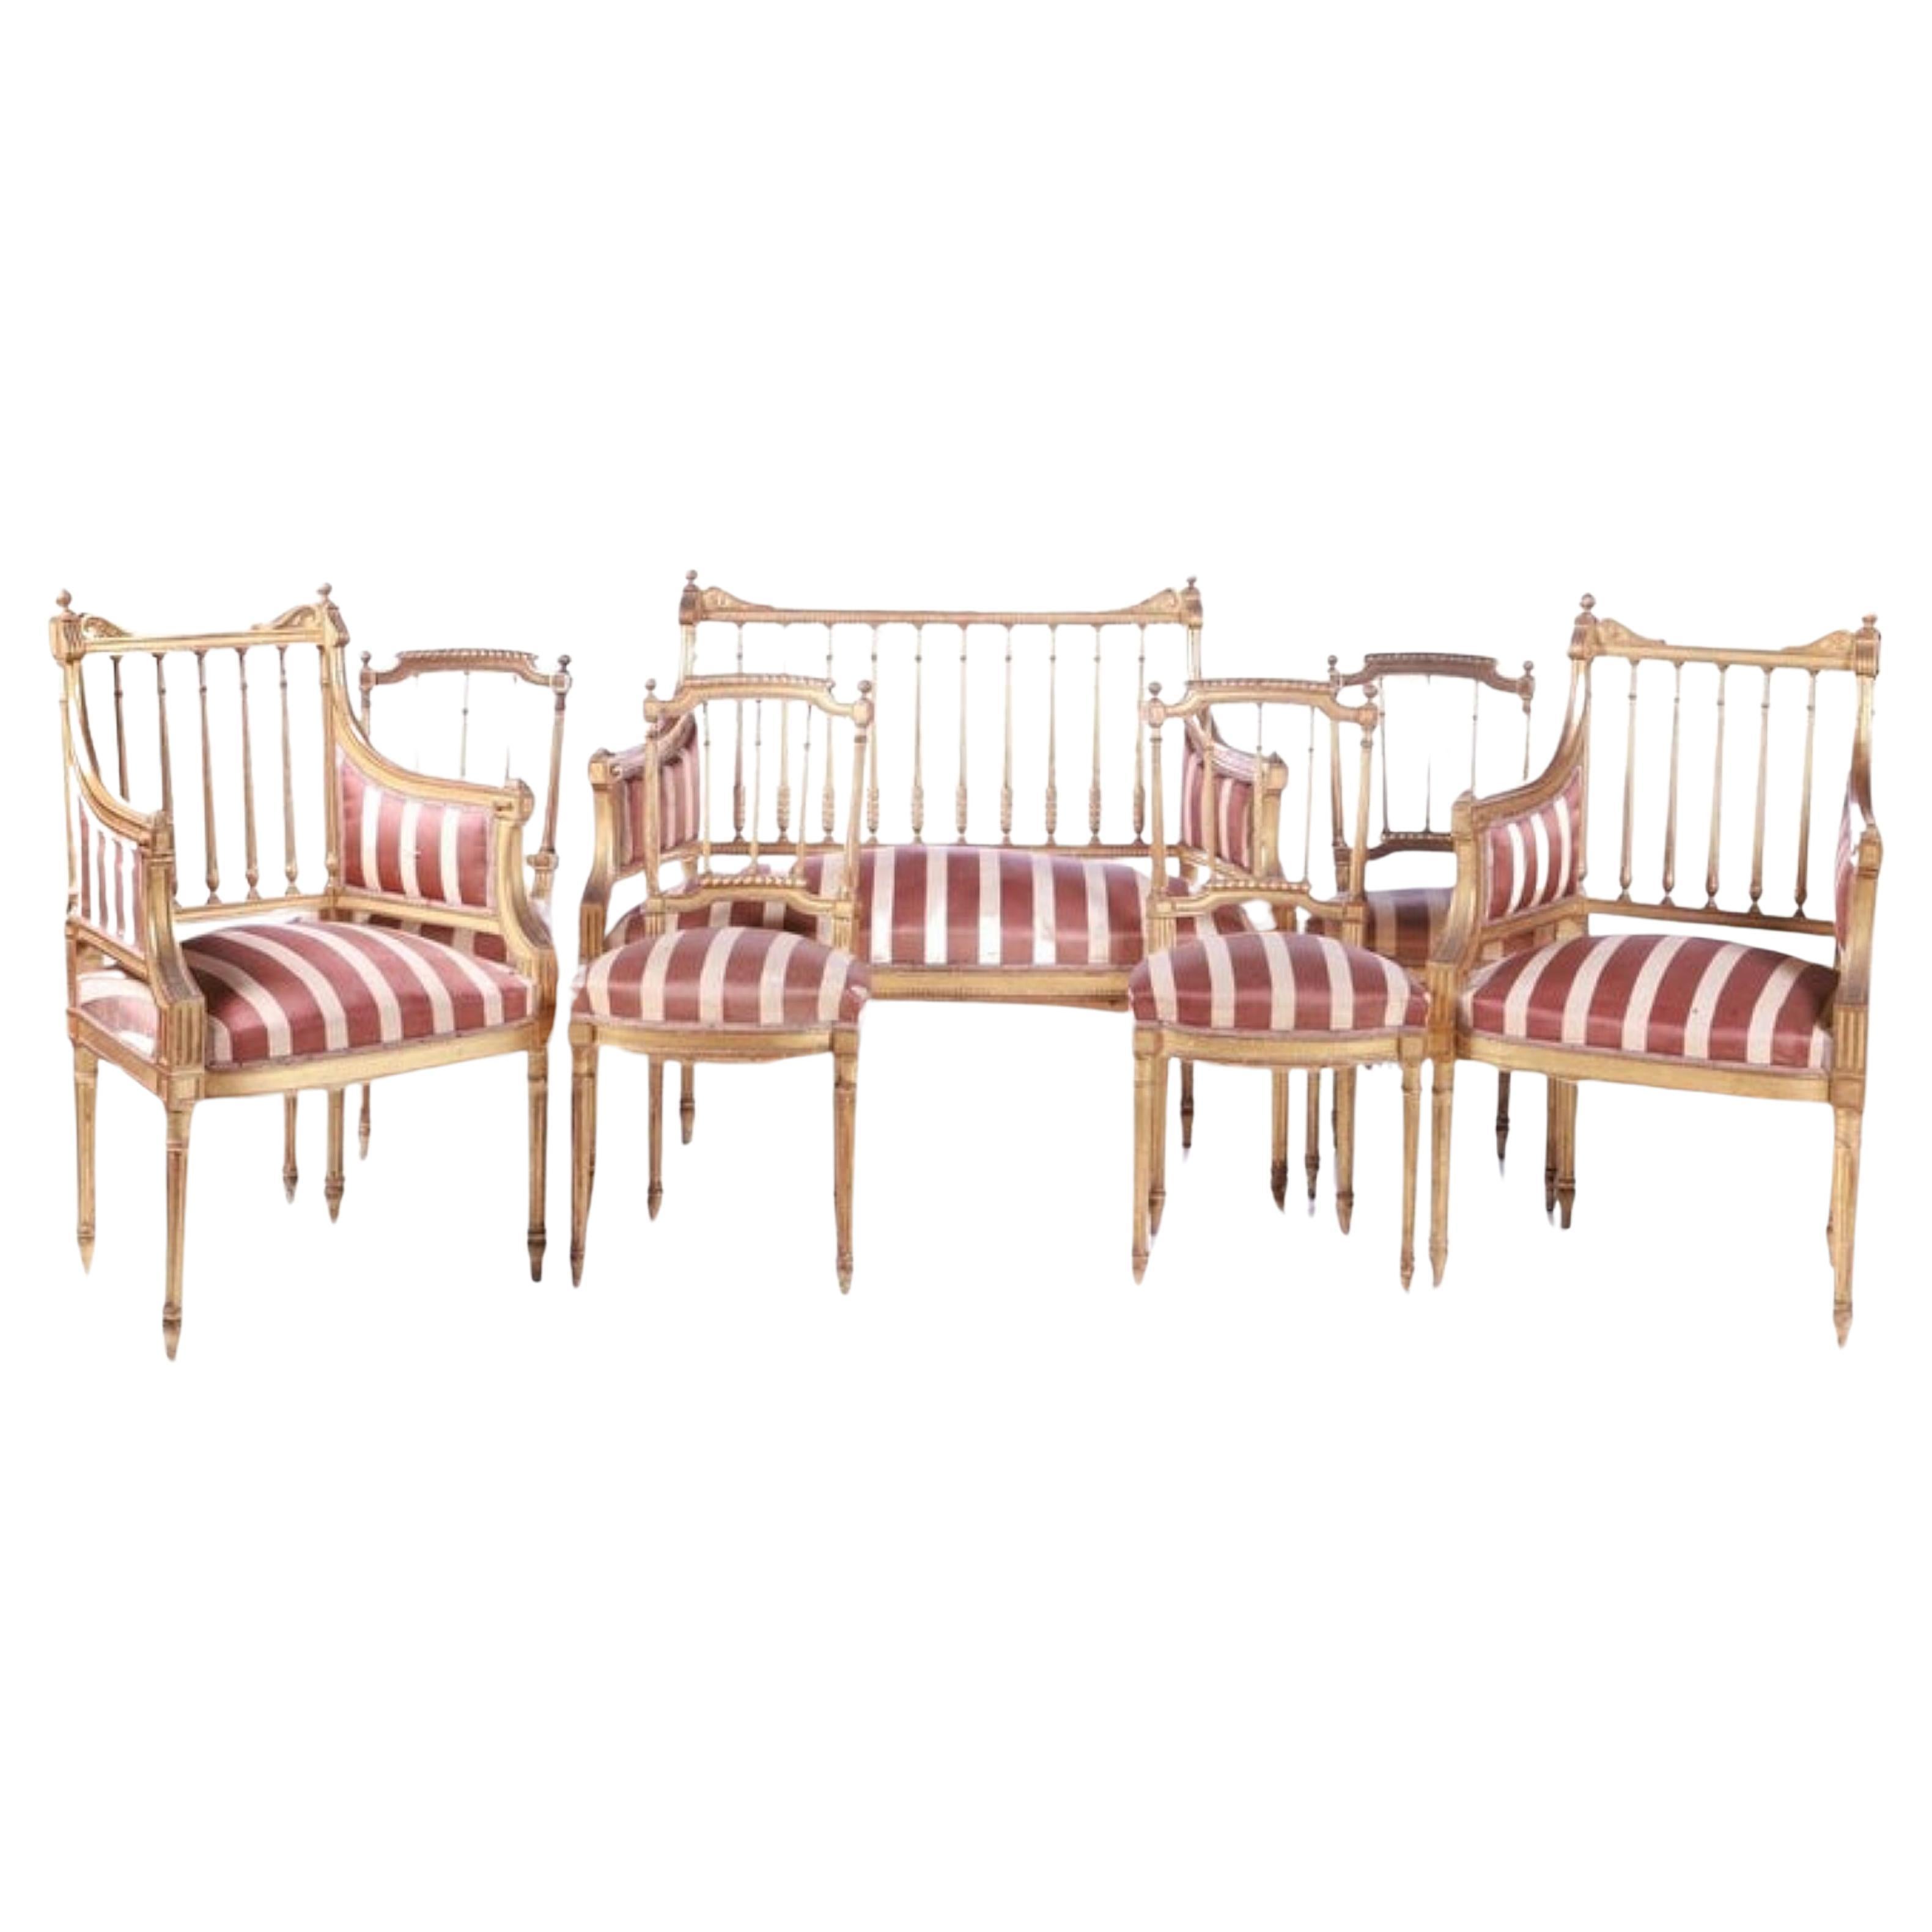 Ensemble de canapés français, 4 chaises et 2 fauteuils fin 19ème siècle début 20ème siècle